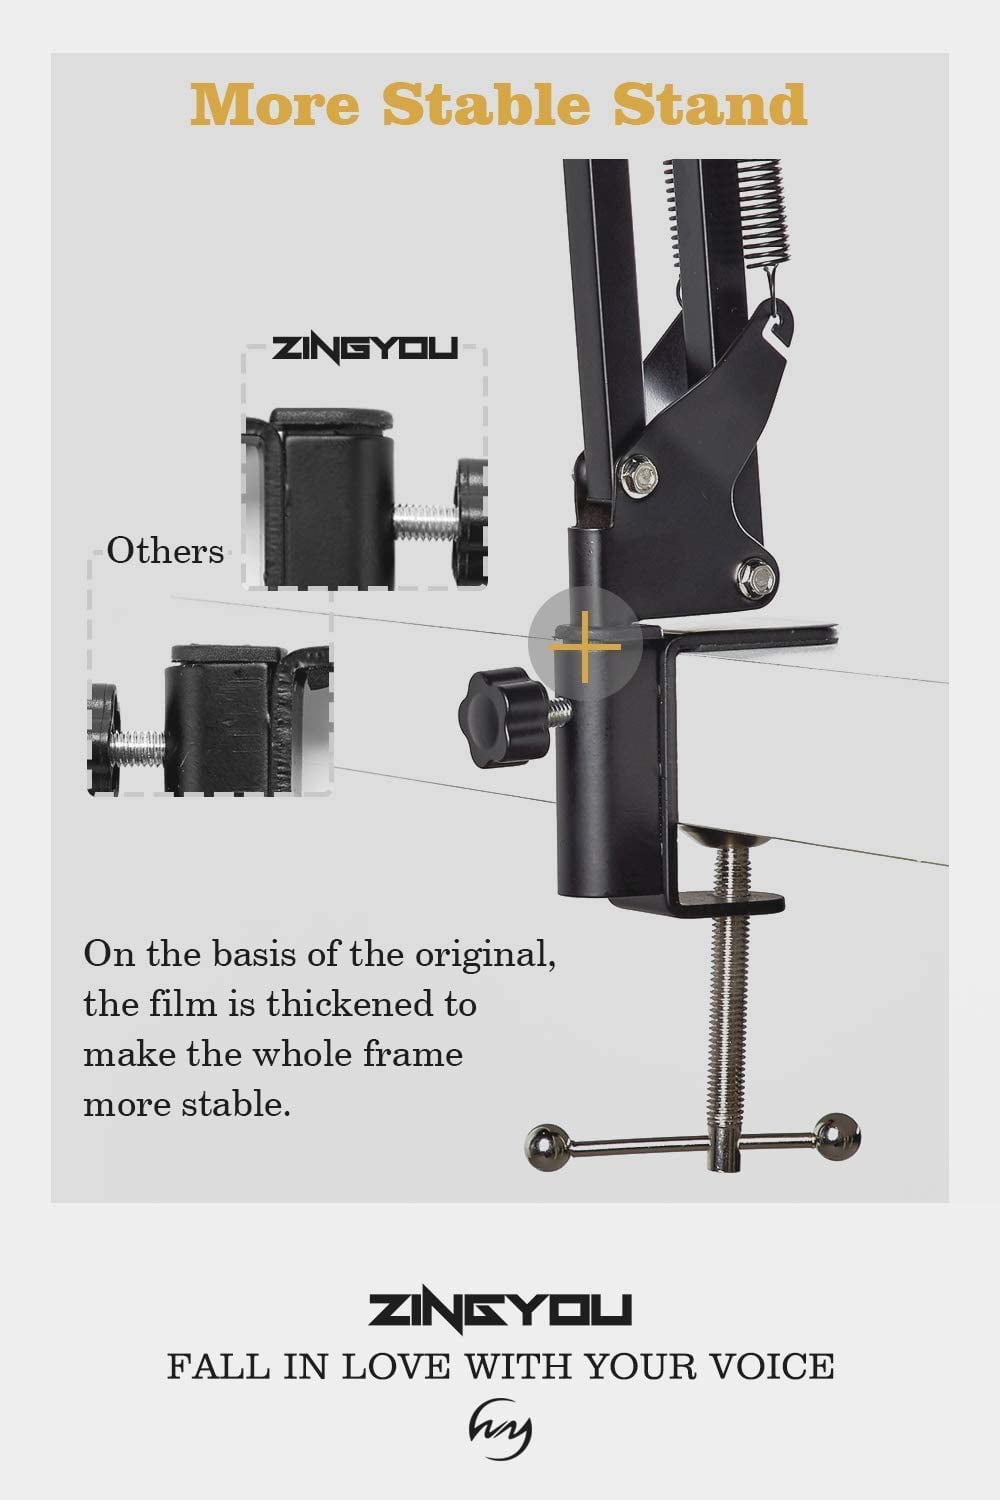 ZY-007 micrófono de profesional incluyen soporte de brazo de tijera de suspensión,montaje de choque y filtro pop para grabación de estudio y radiodifusión ZINGYOU Conjunto de Micrófono de Condensador